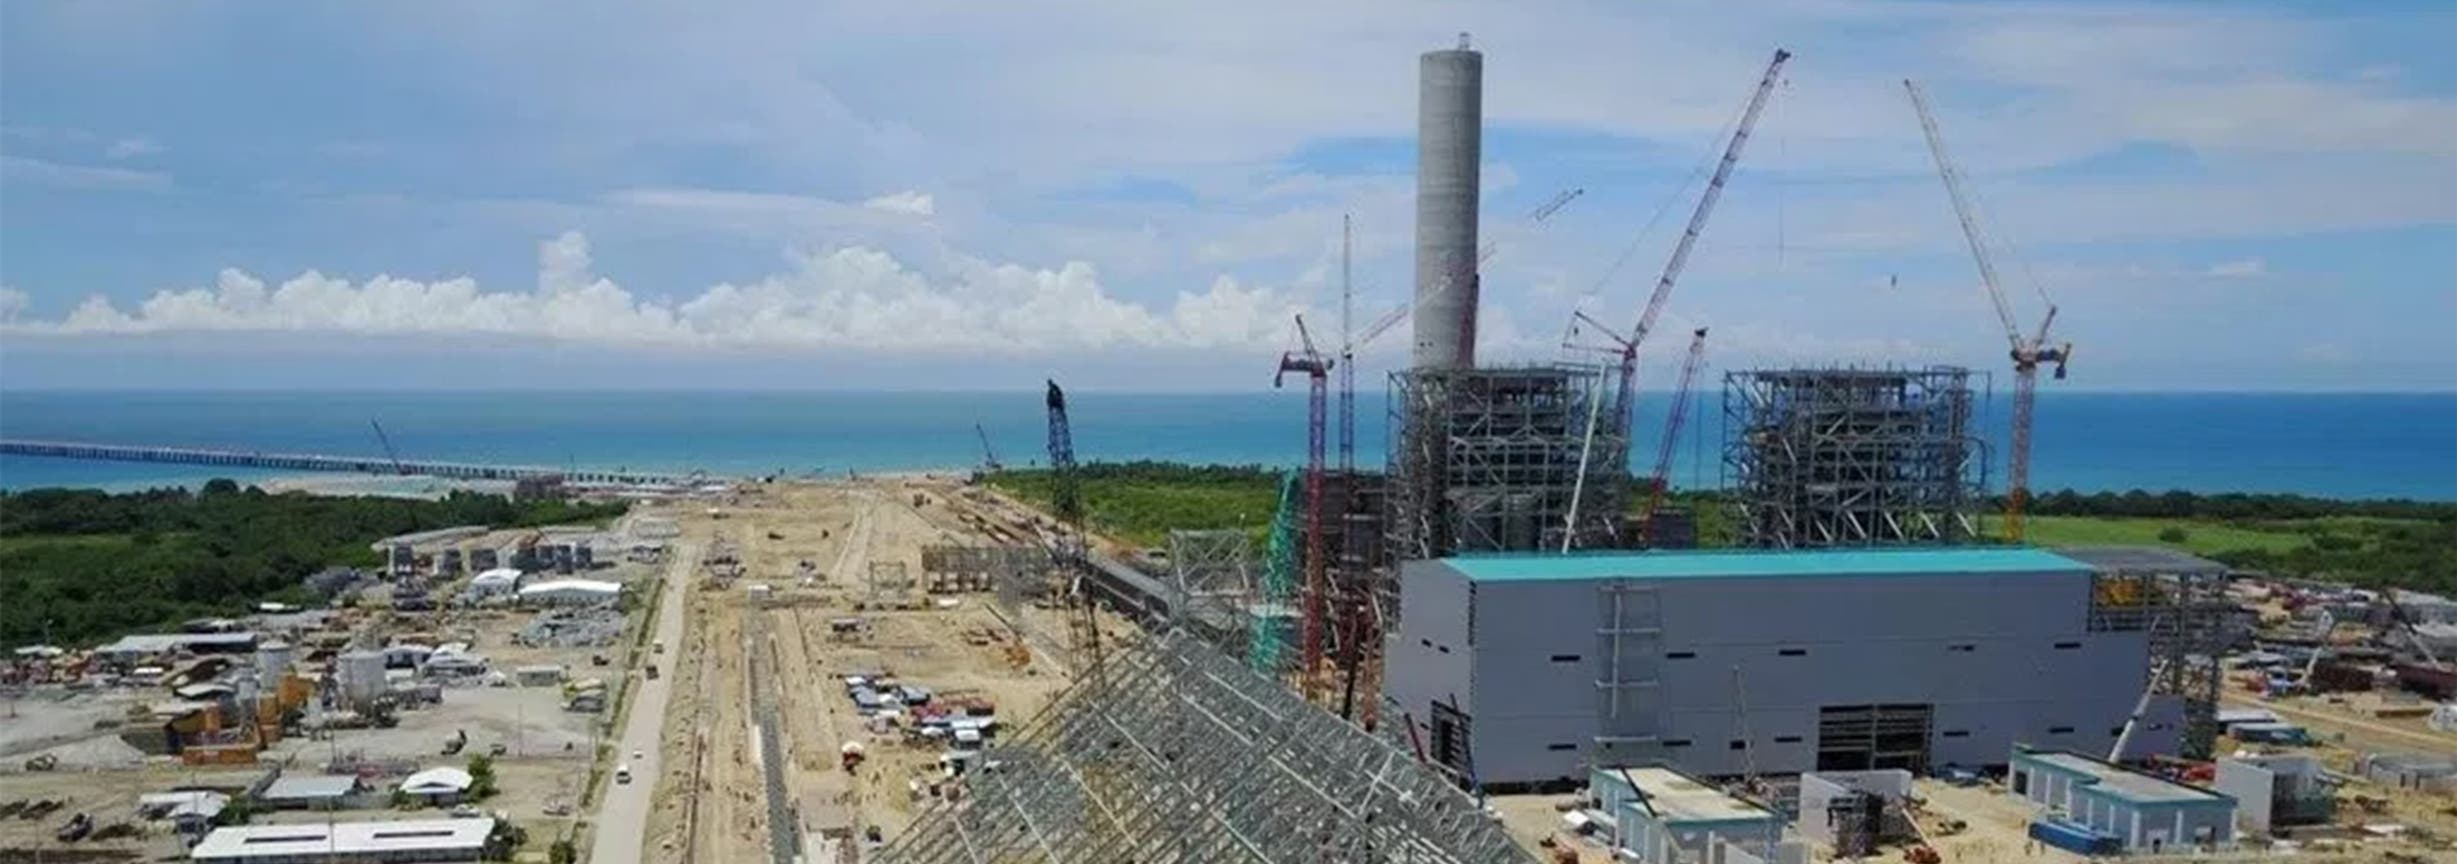 La construcción de la Central Termoeléctrica Punta Catalina  incluye dos plantas a carbón que tendrá una capacidad bruta de 752 megavatios, así como un muelle para desembarcar elcarbón mineral.
FUENTE EXTERNA